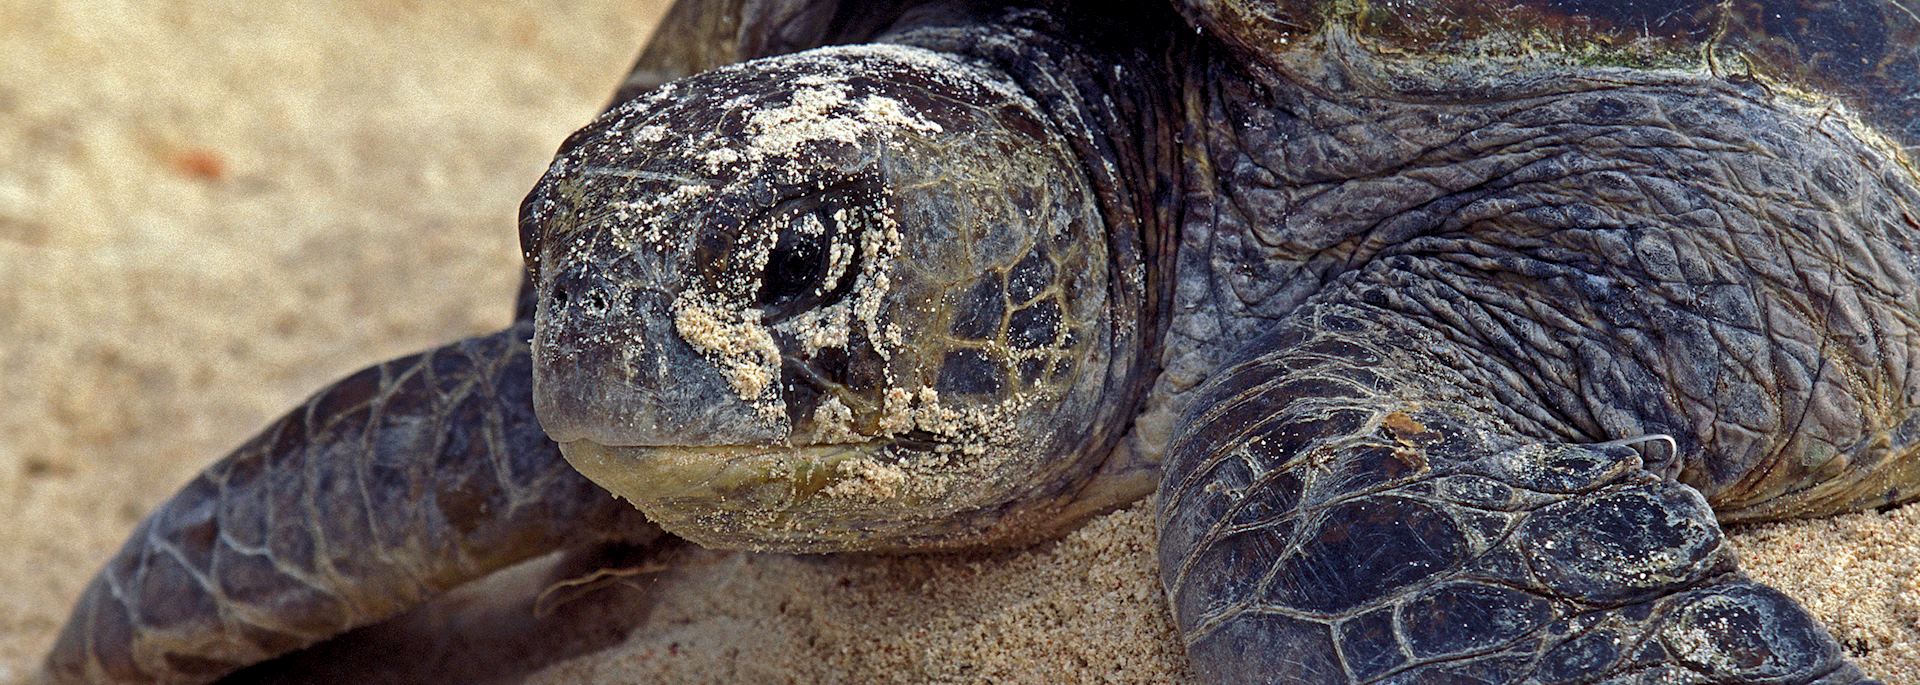 Loggerhead turtle on Wilson Island